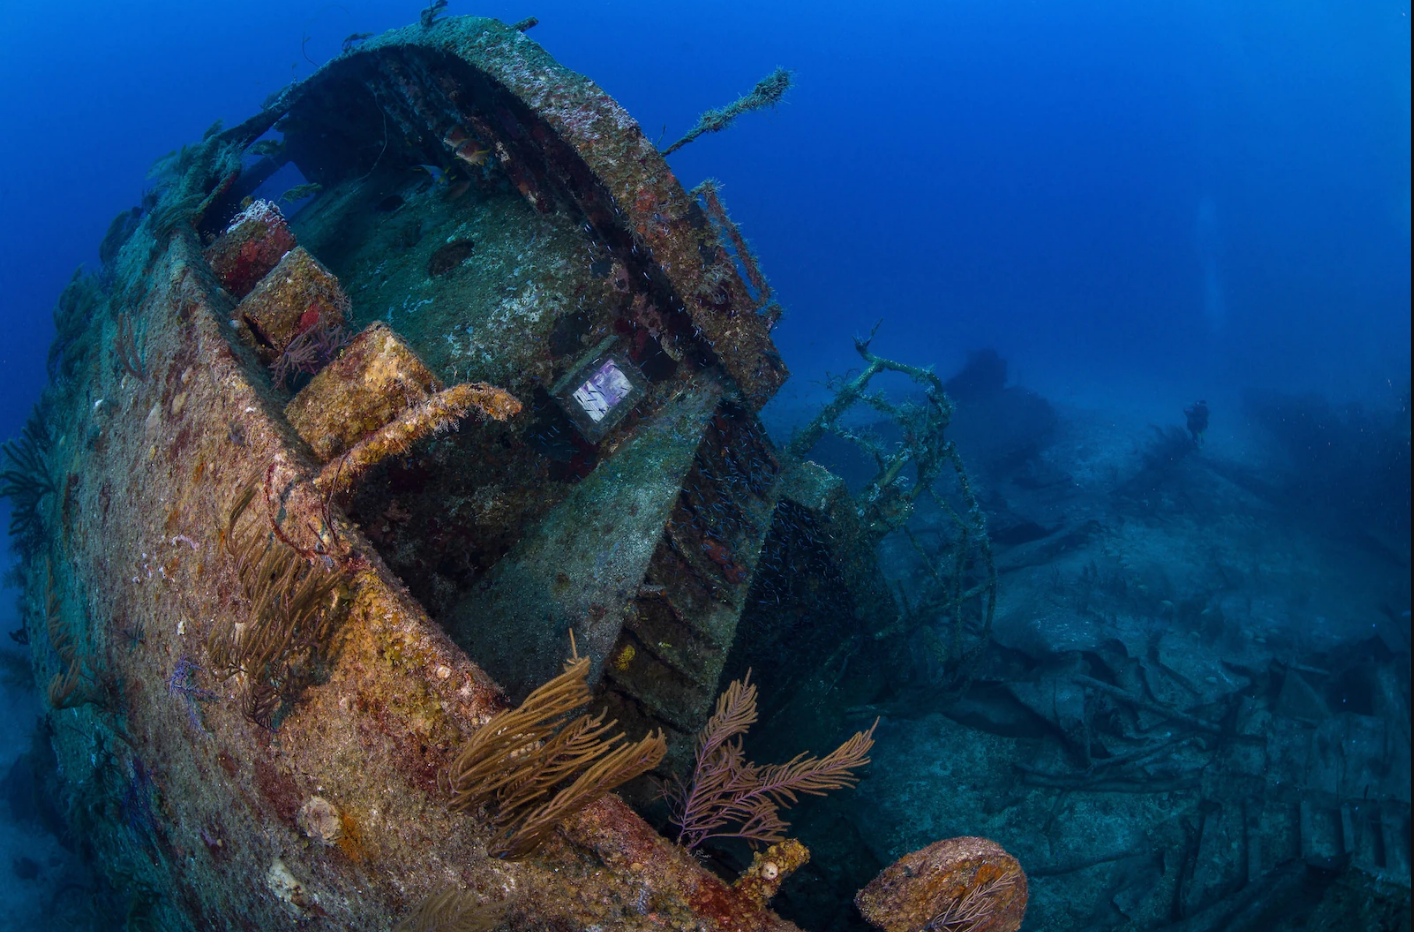 盘点海底的古沉船价值600亿美金宝藏埋葬海底残骸遍布